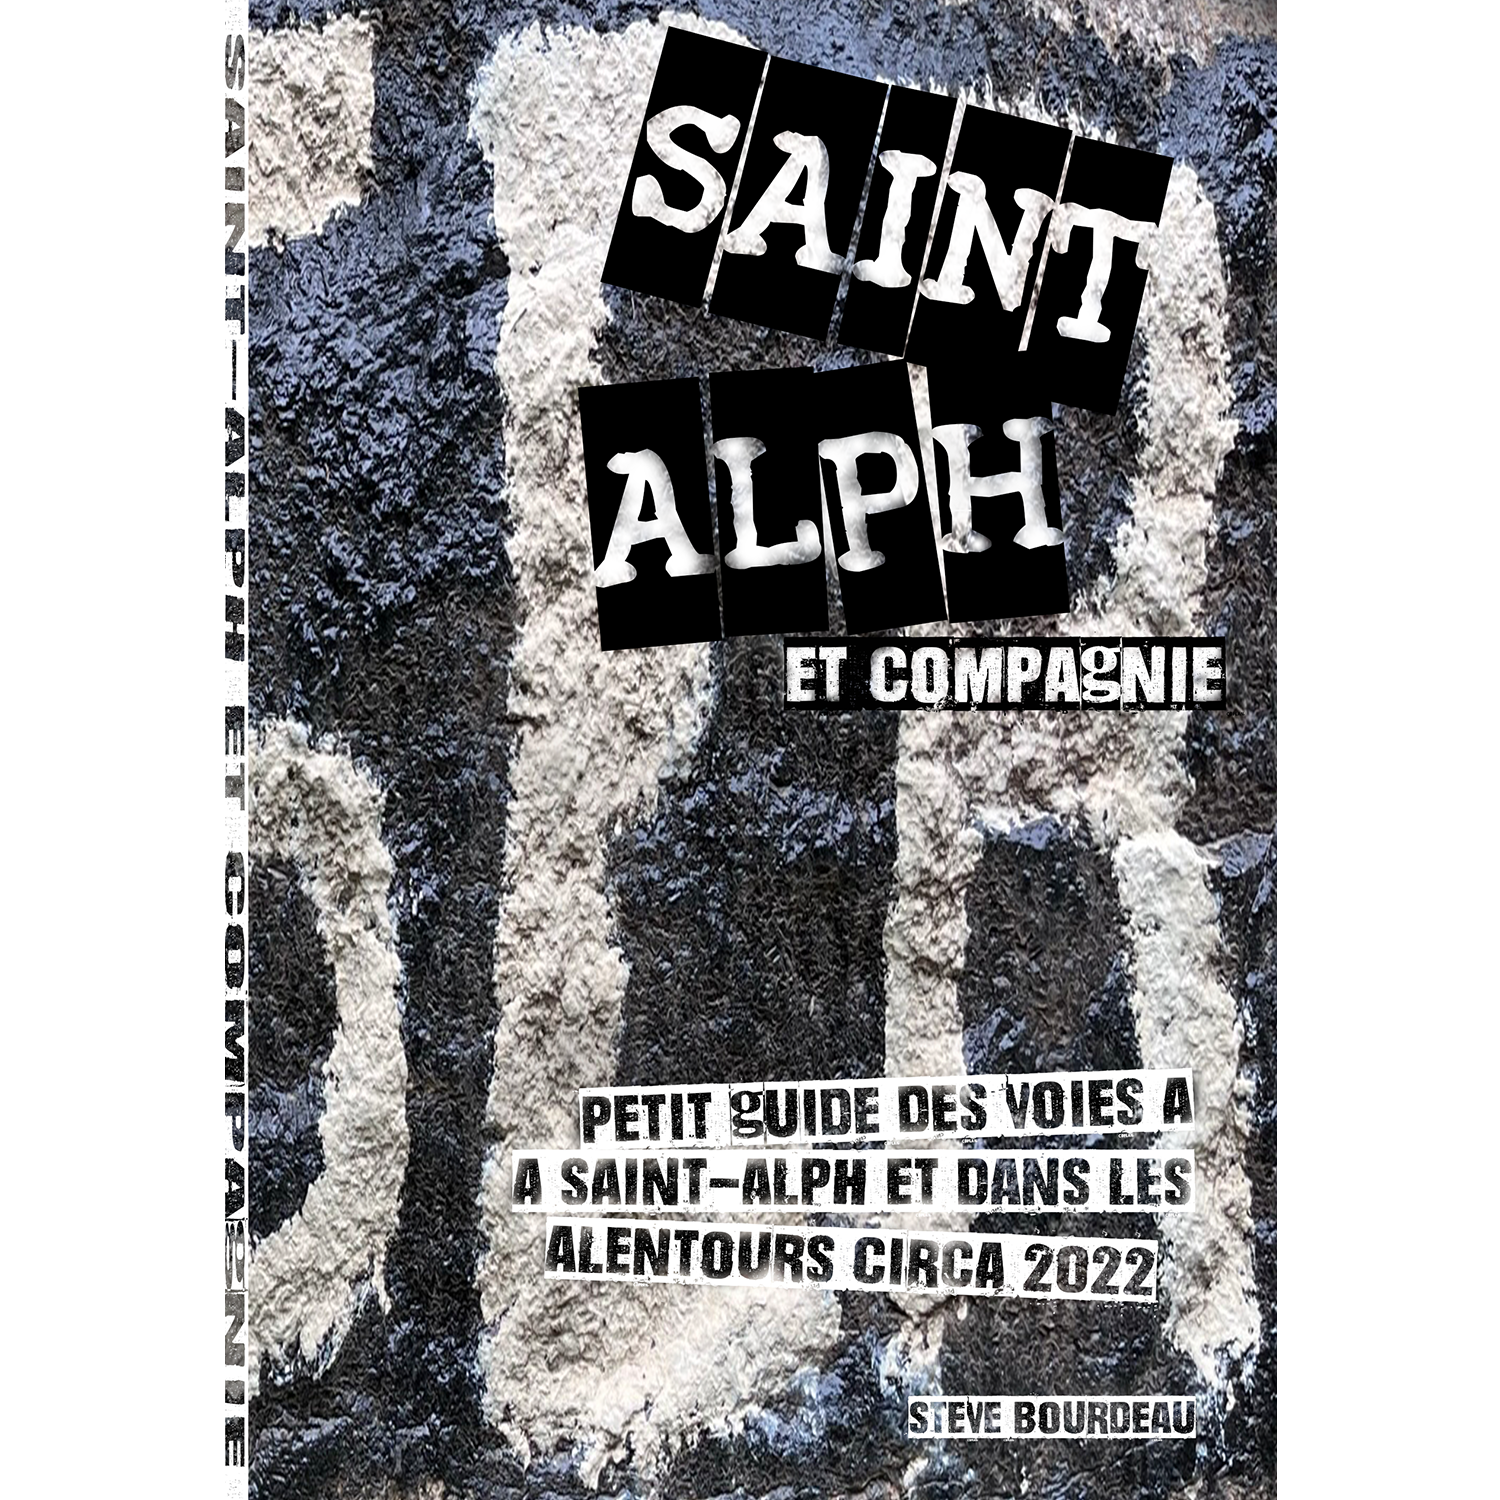 Saint-Alph et Compagnie